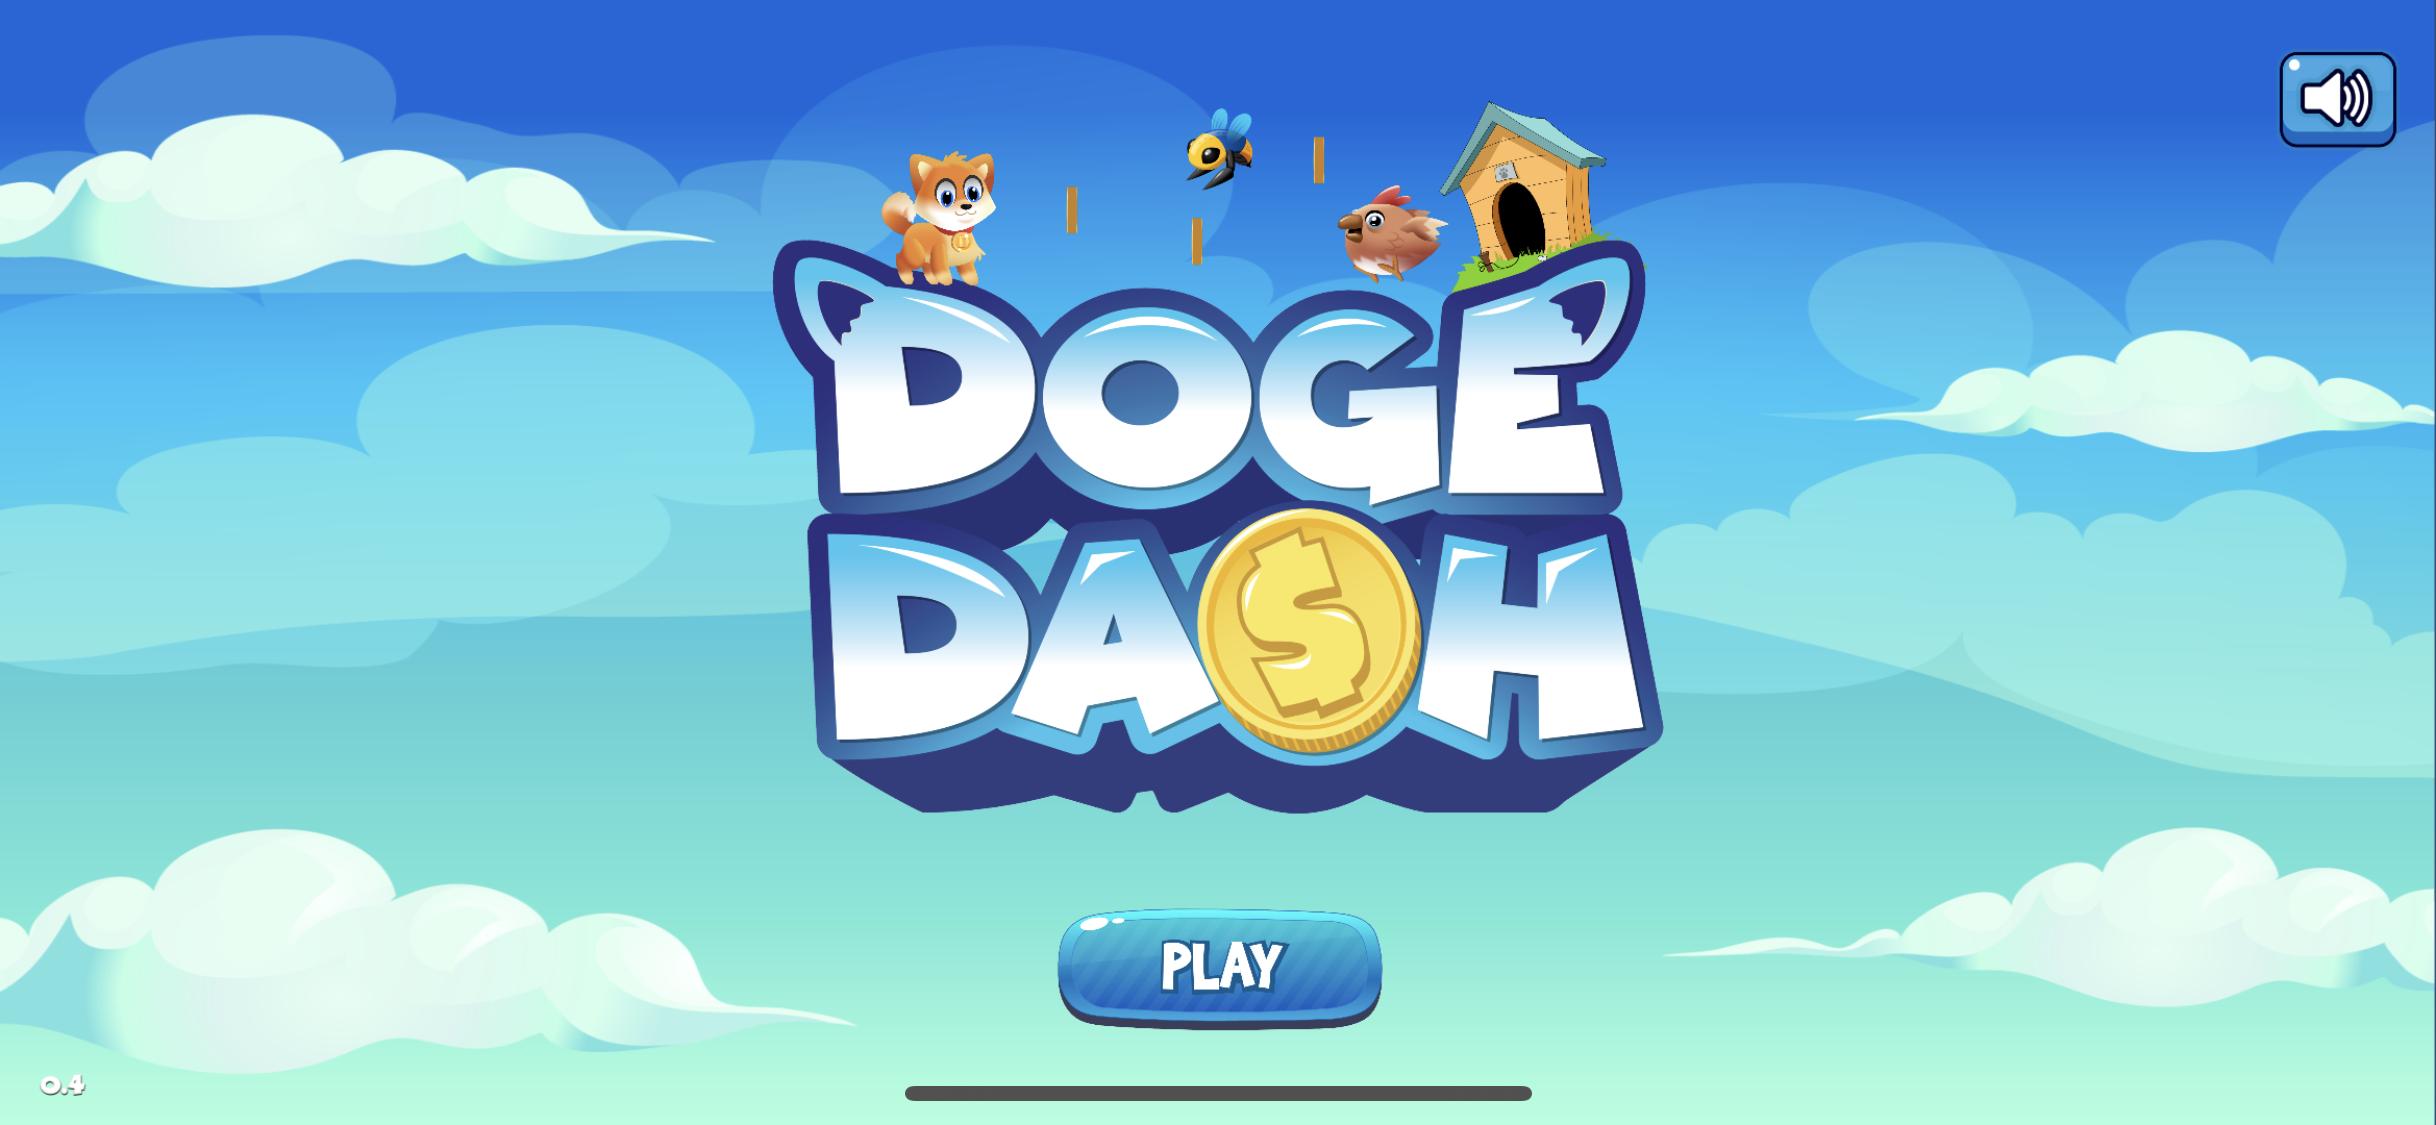 R$ 320 por dia para jogar: saiba como ganhar dinheiro com NFT Doge Dash